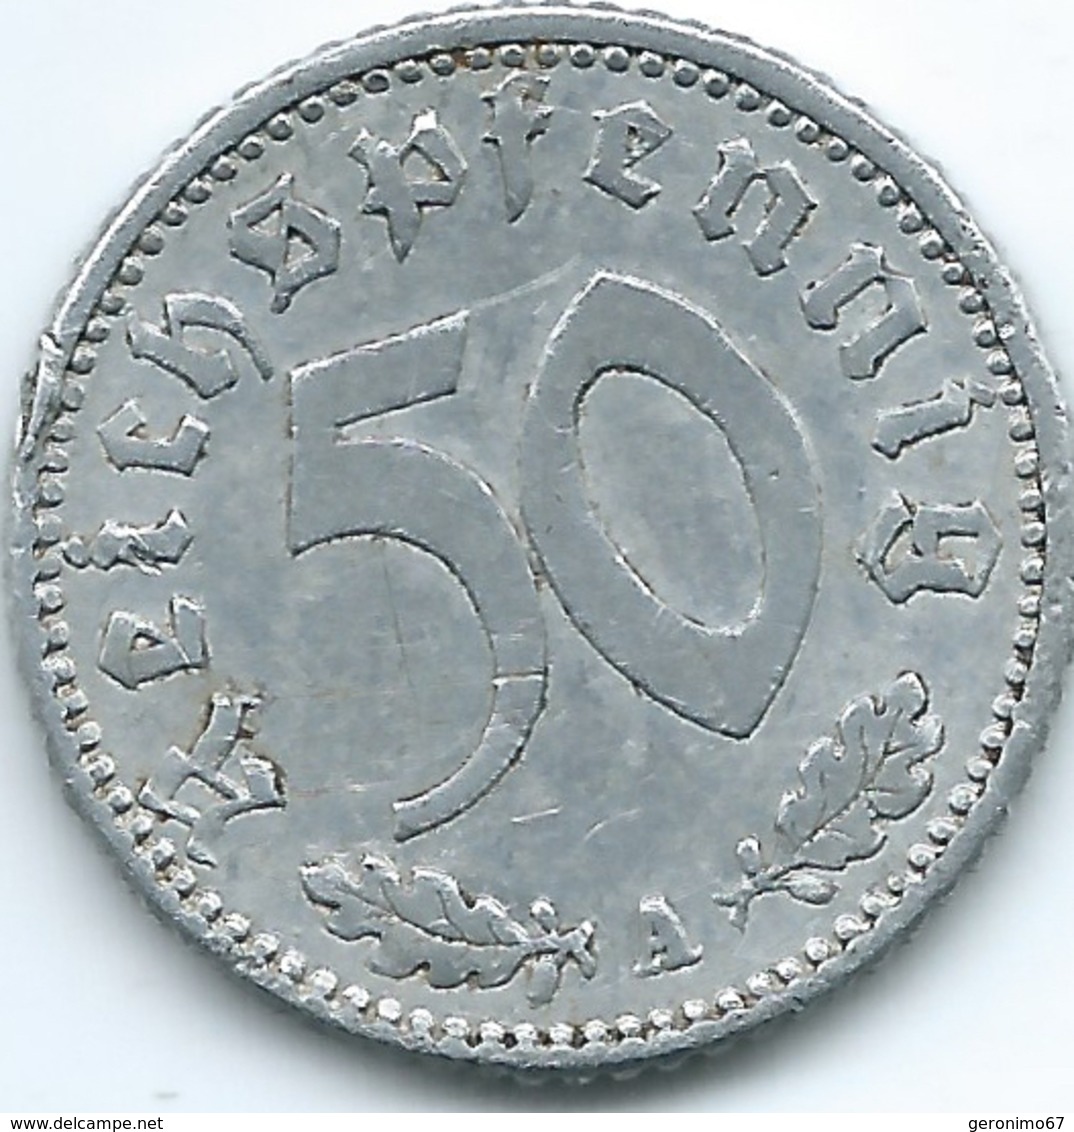 Germany - 3rd Reich - 50 Pfennig - 1941 A - KM96 - 50 Reichspfennig